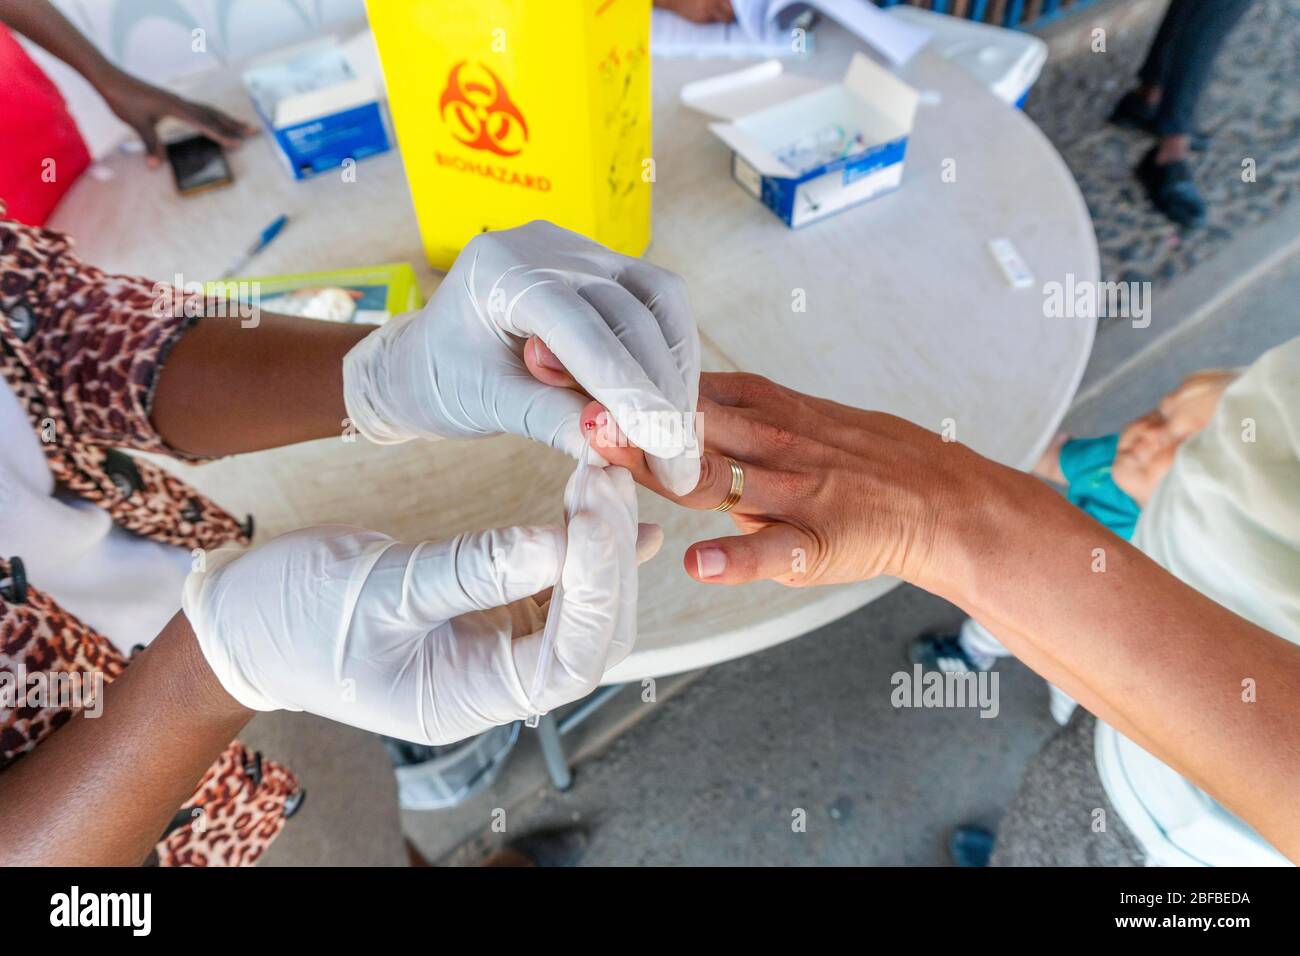 L'infirmière effectue un test rapide de paludisme à partir de sang sur la frontière sud-africaine et mozambicaine de Lebombo, en Afrique du Sud Banque D'Images